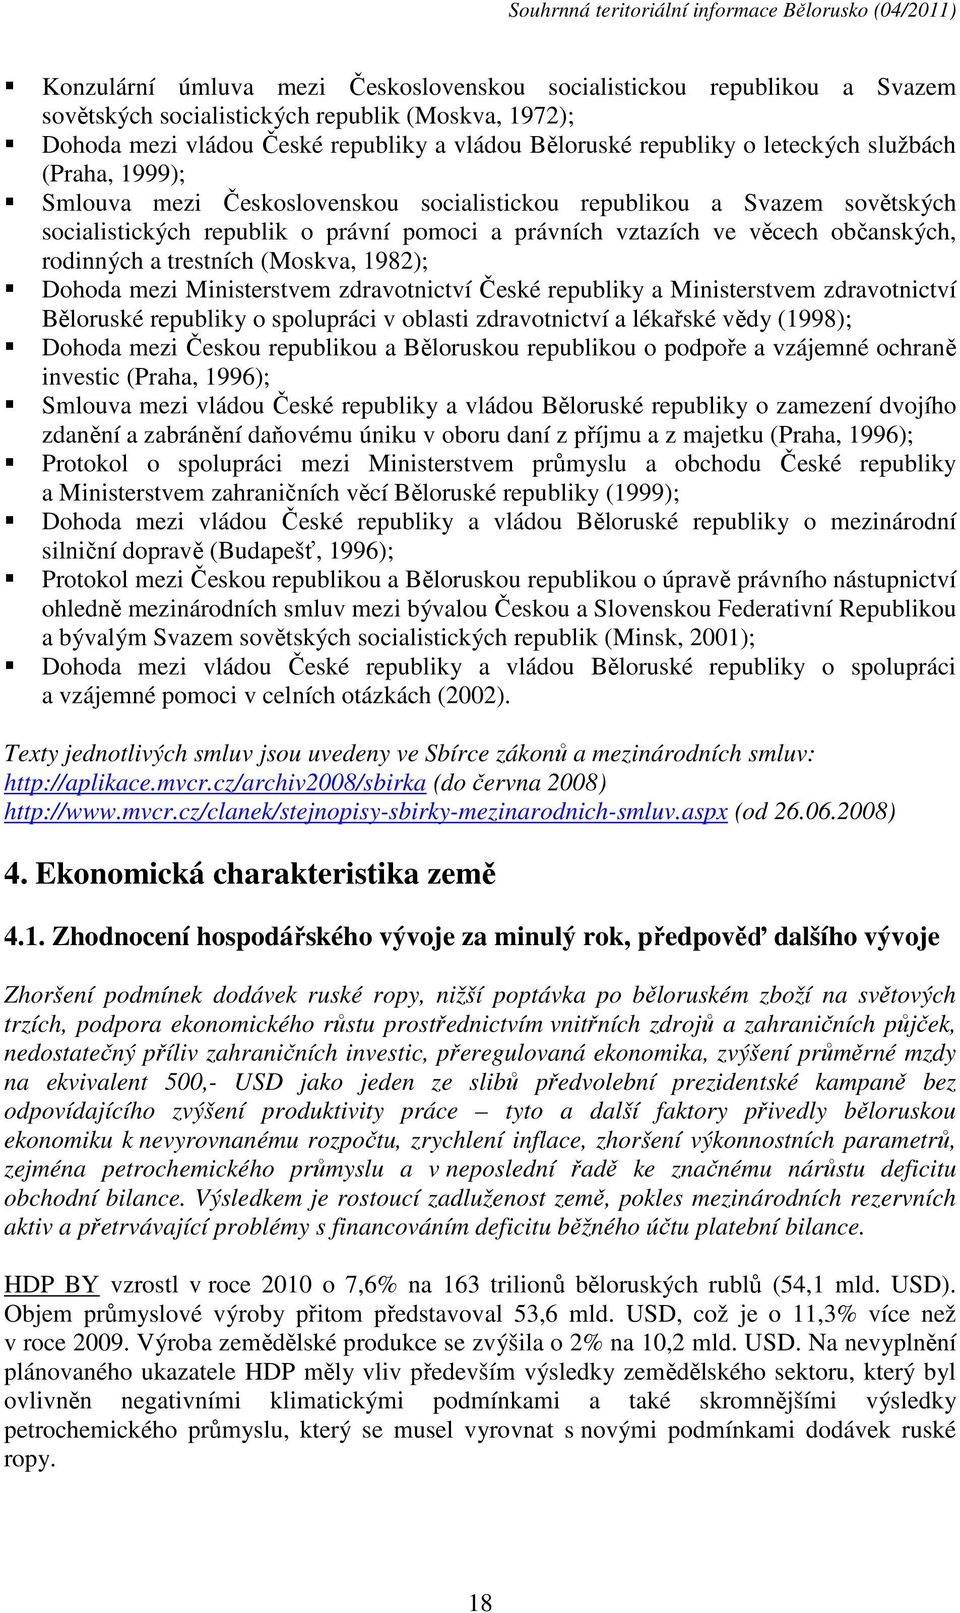 rodinných a trestních (Moskva, 1982); Dohoda mezi Ministerstvem zdravotnictví České republiky a Ministerstvem zdravotnictví Běloruské republiky o spolupráci v oblasti zdravotnictví a lékařské vědy